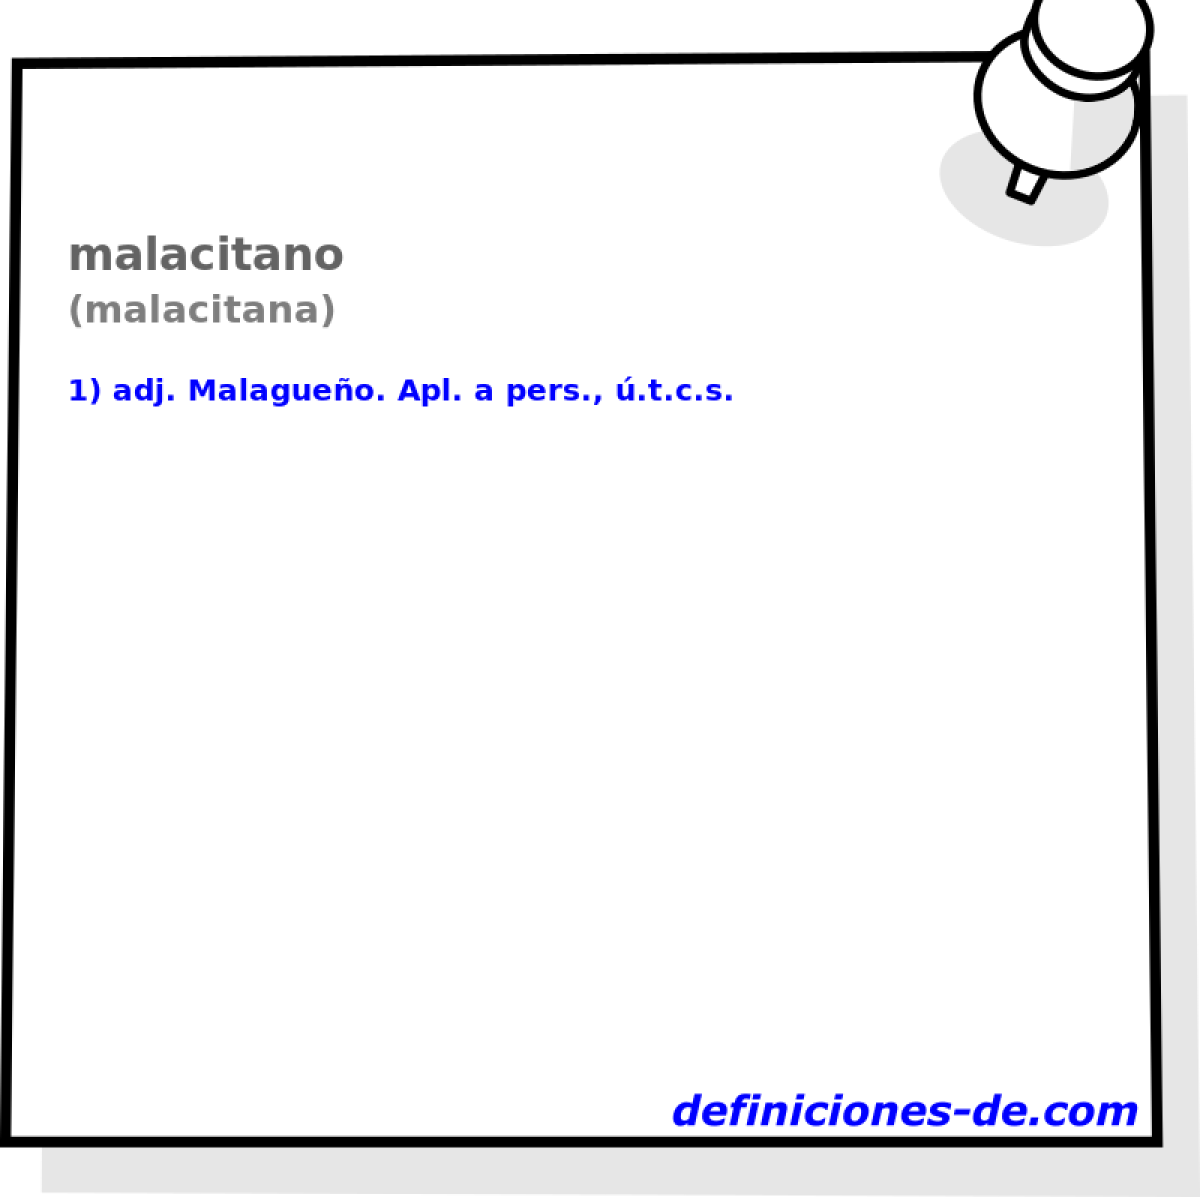 malacitano (malacitana)